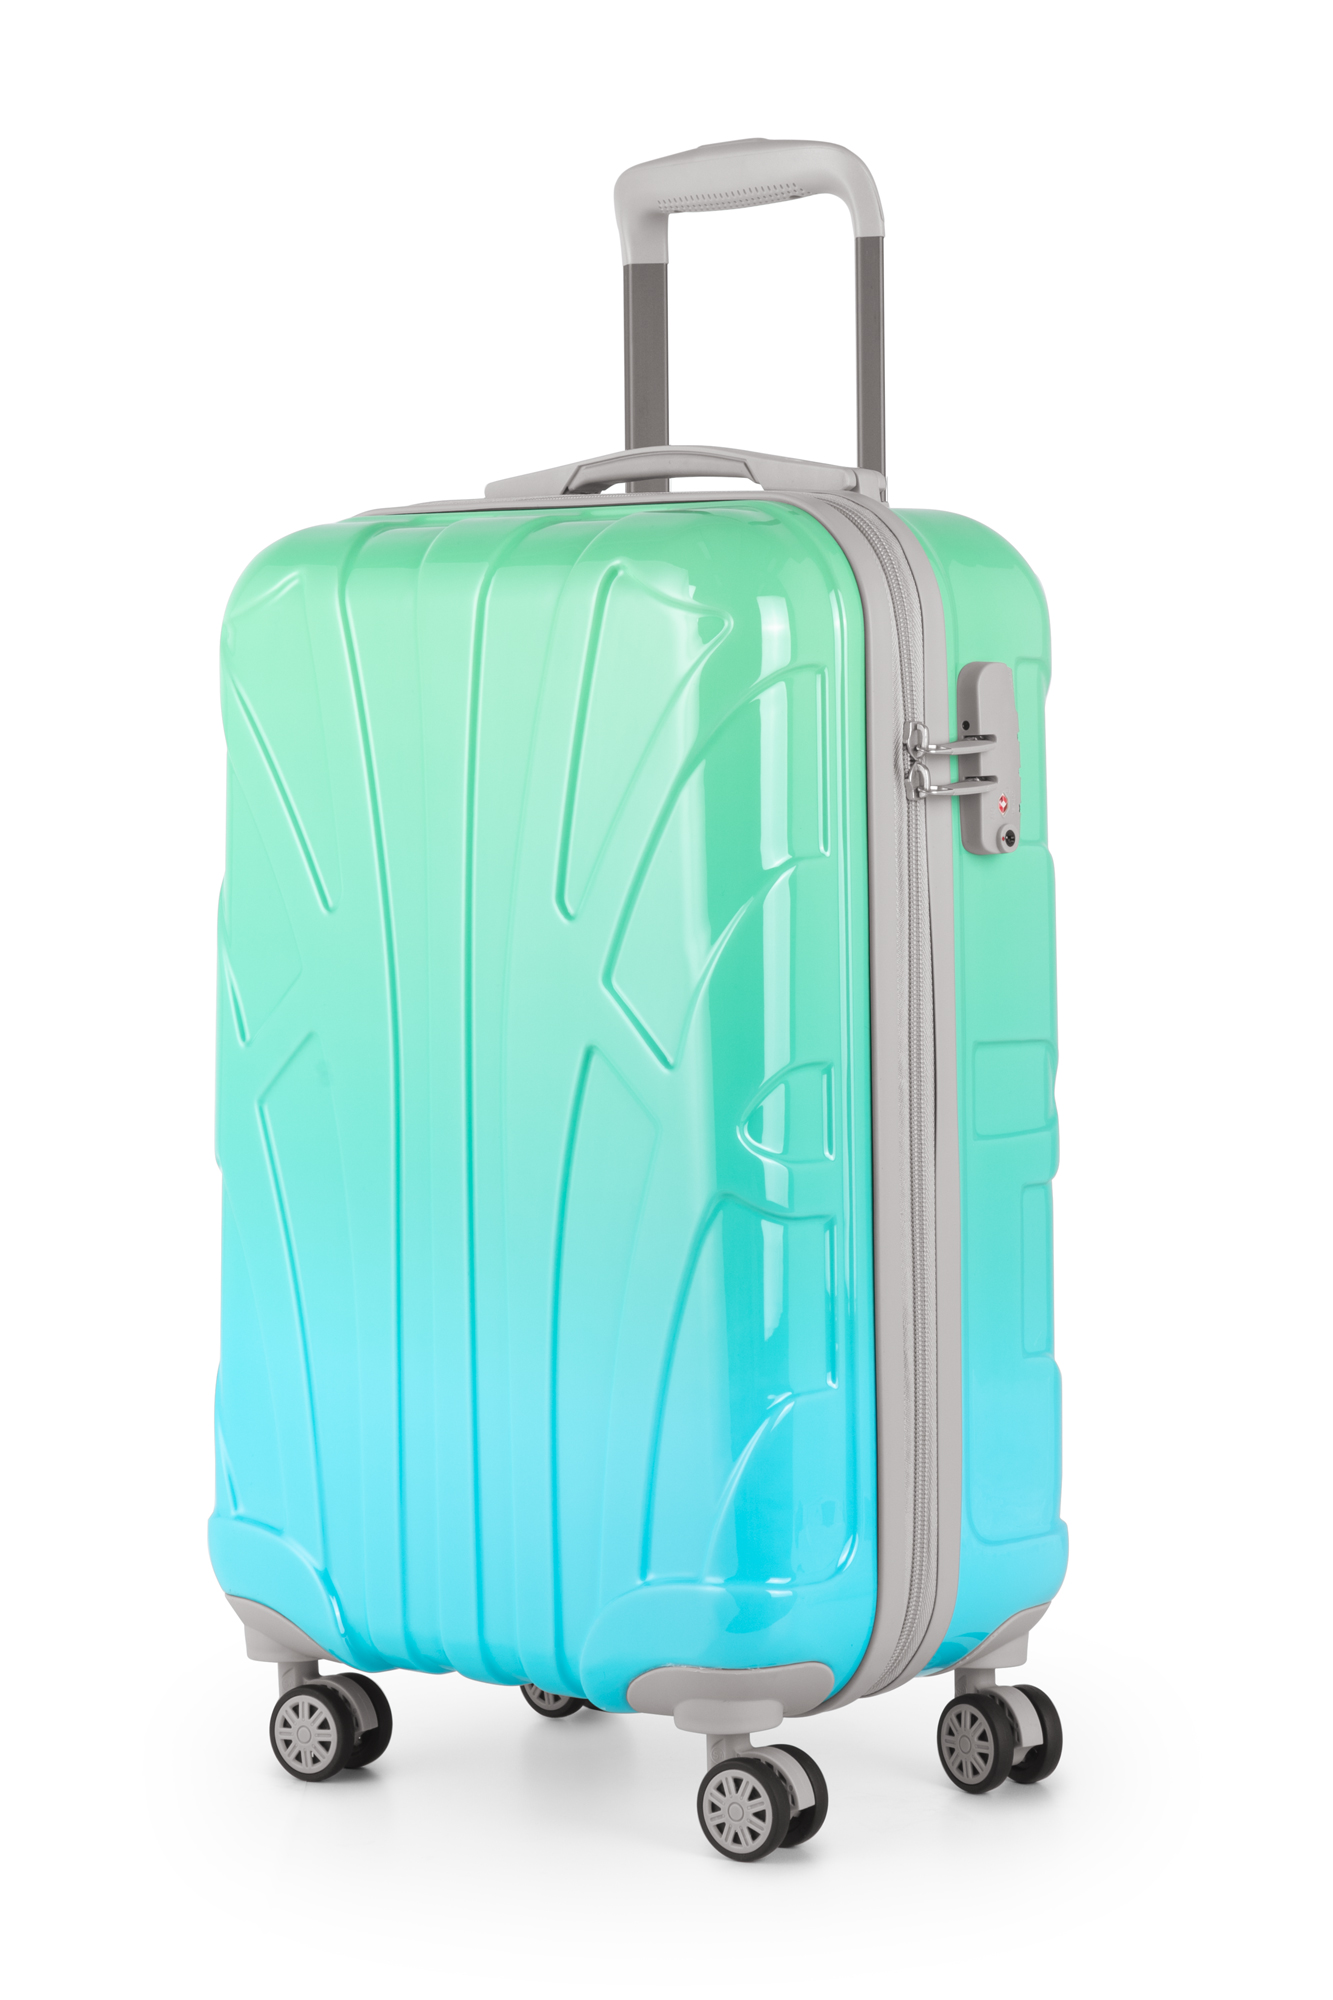 Kabinenkoffer Handgepäck 55x35x20 cm, Trolley Hartschale glänzend Farbverlauf, TSA, Größe S